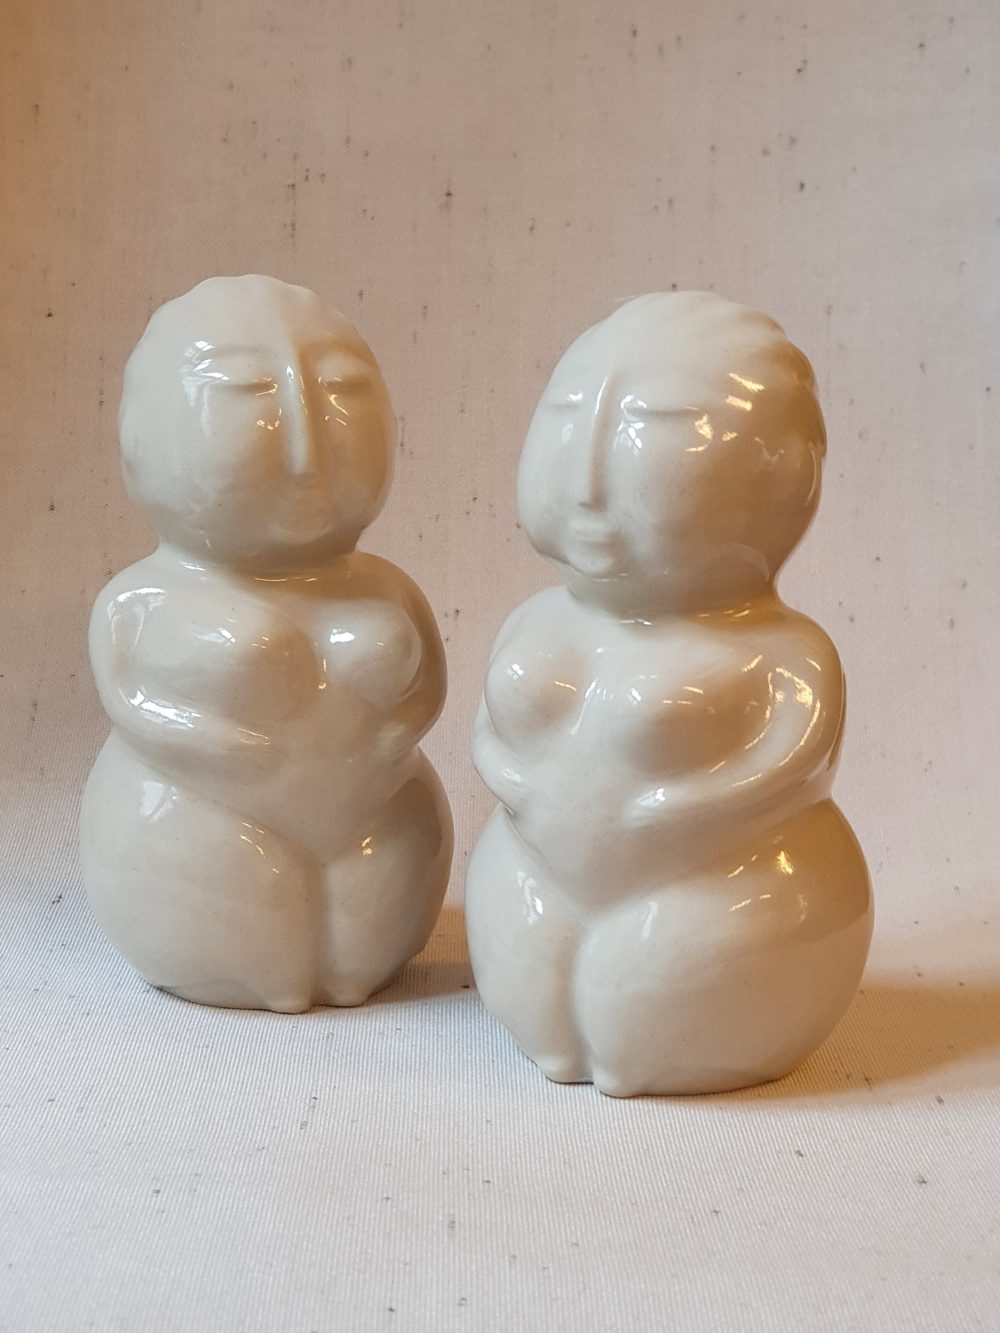 Lene Stevns Jensen, ceramic figures